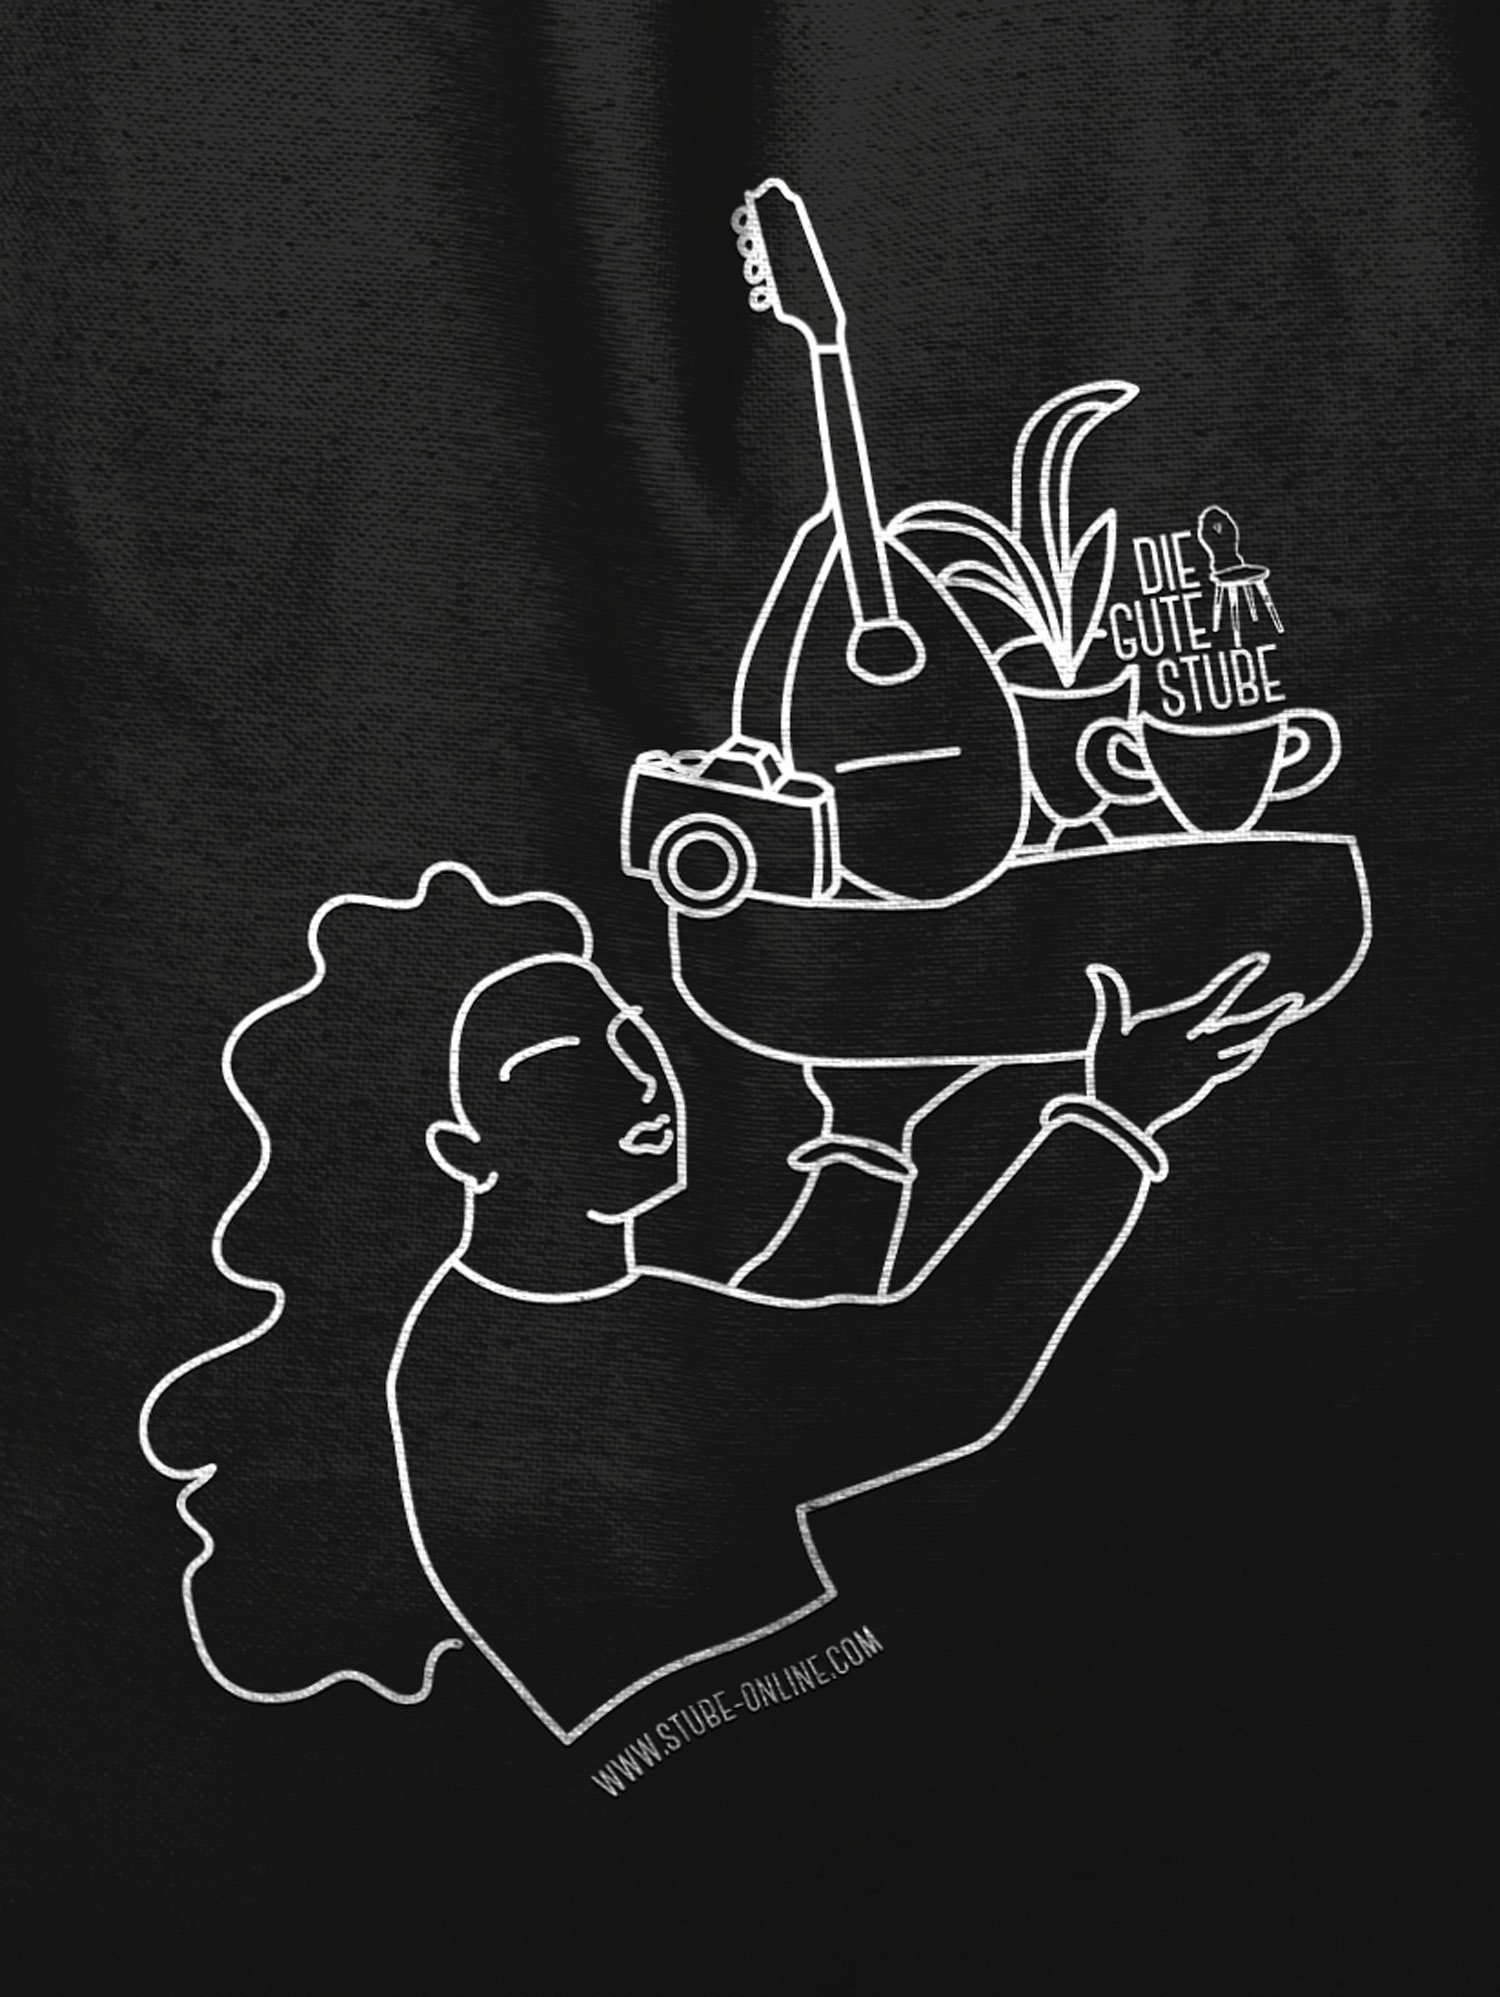 Fotografie, Musik und Keramik sind drei der wichtigsten Kreativbereiche der Guten Stube Andelsbuch. Weiße Lineart Illustration auf schwarzer Baumwolltasche. Tagelohn der Guten Stube Andelsbuch. Illustration von Simone Angerer.